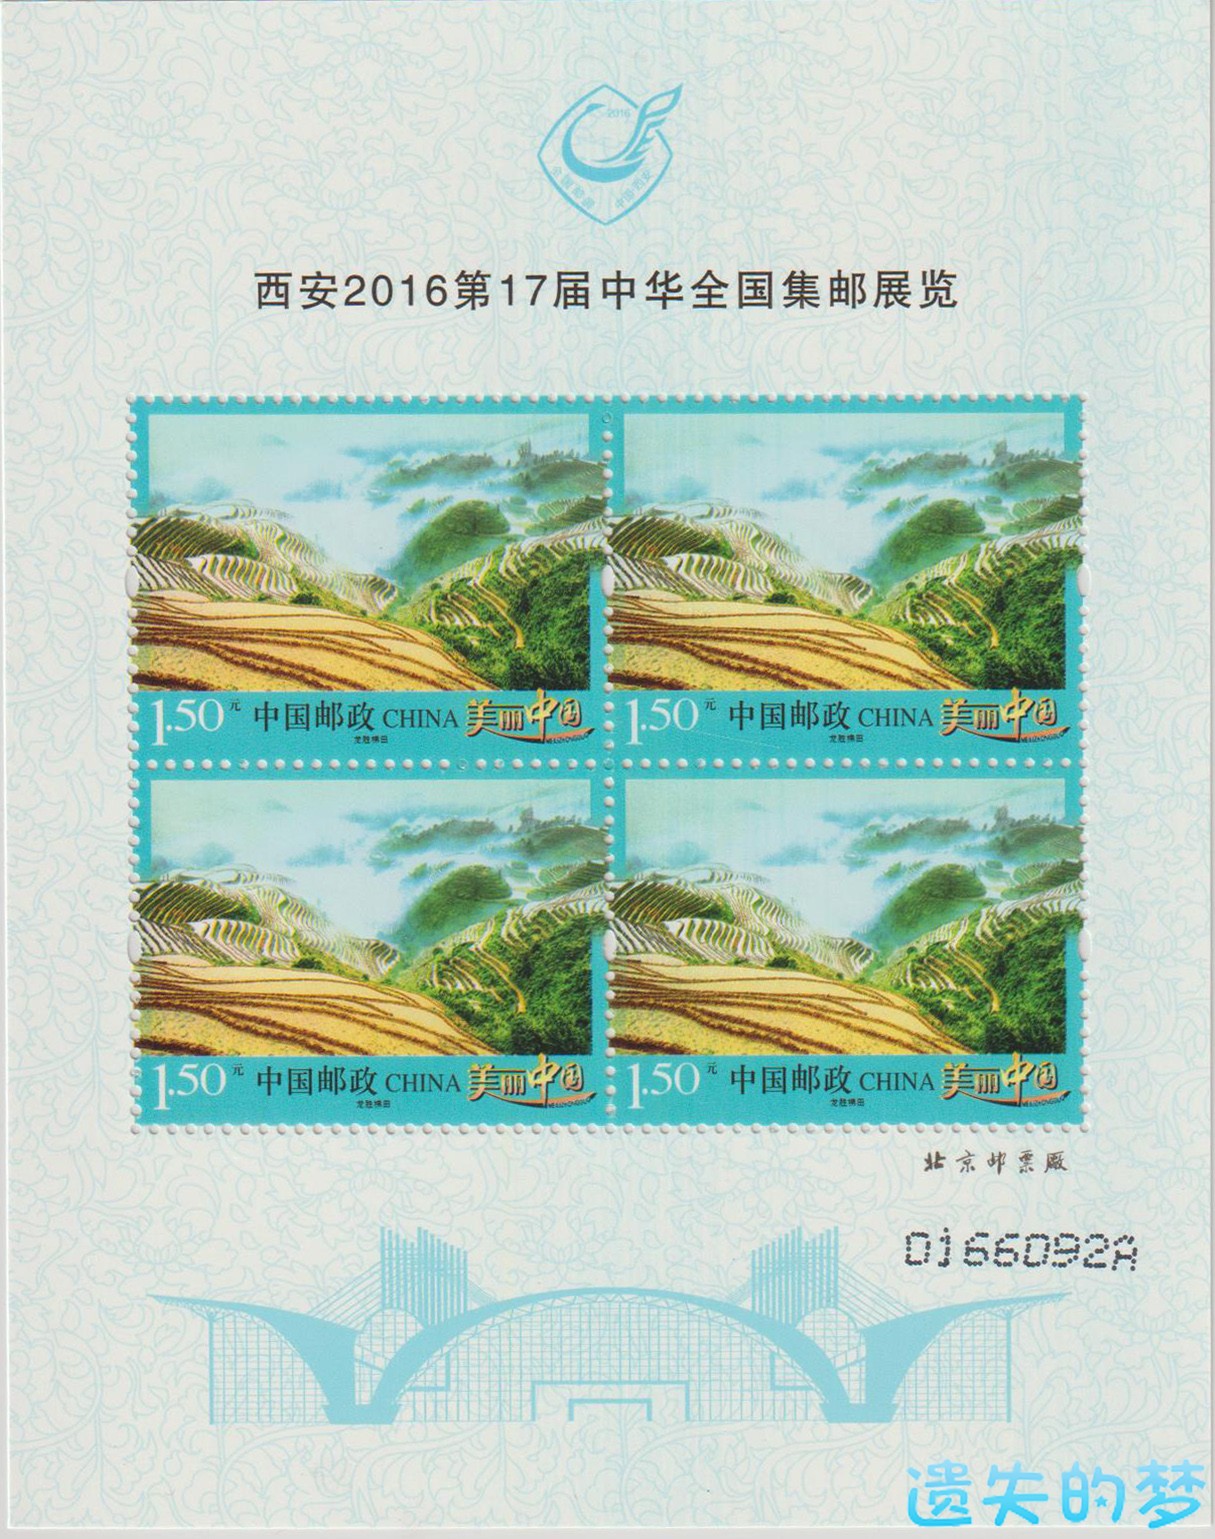 西安2016第17届中华全国集邮展览.jpg